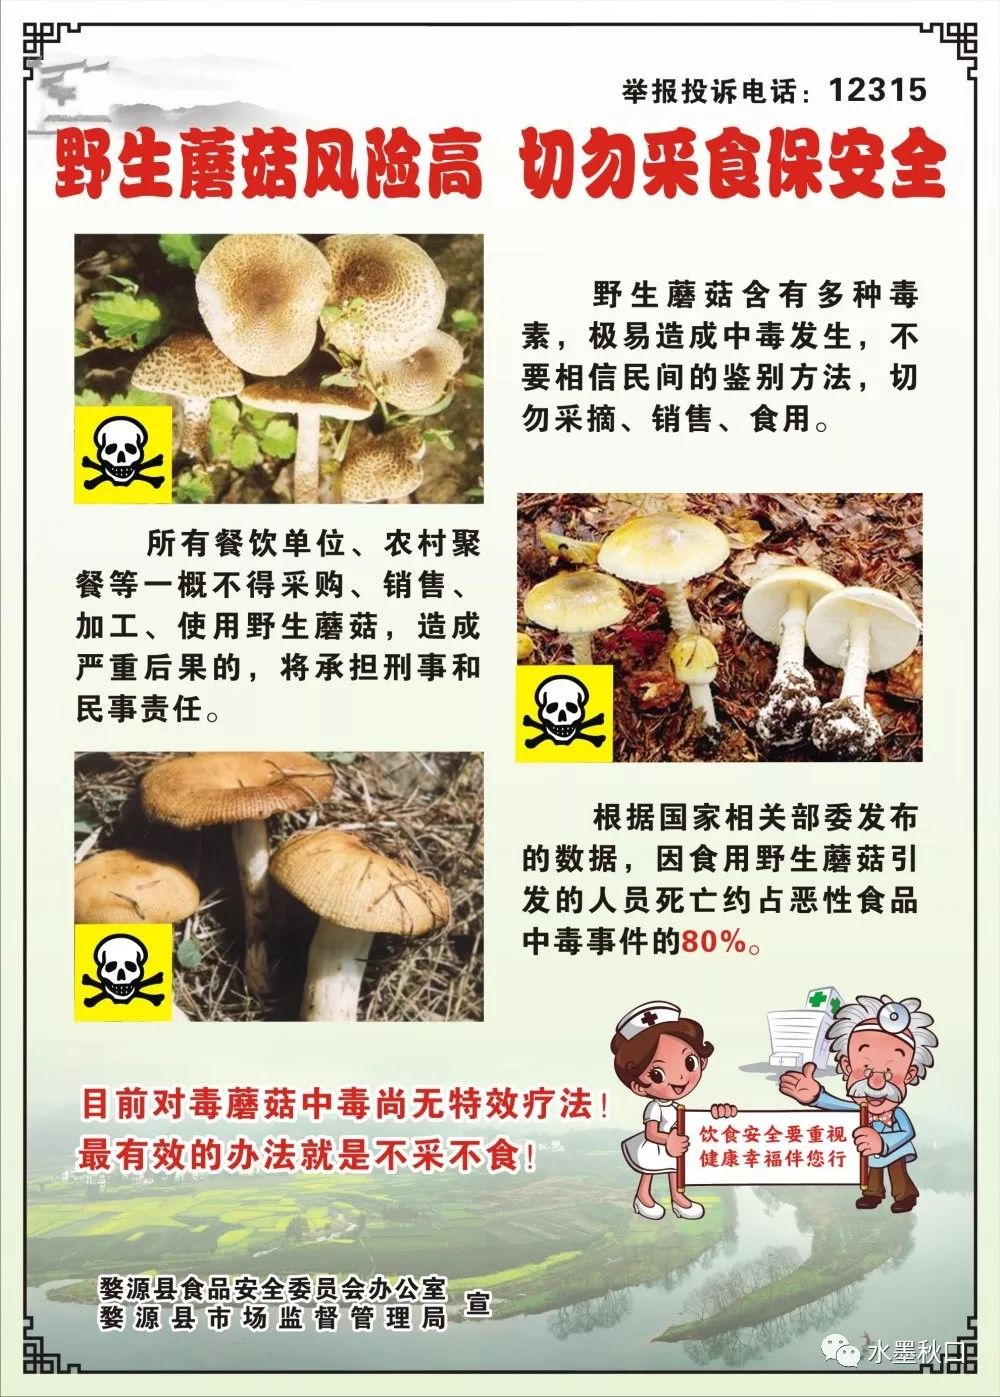 【食品安全动态】秋口镇召开防控野生蘑菇中毒工作会议